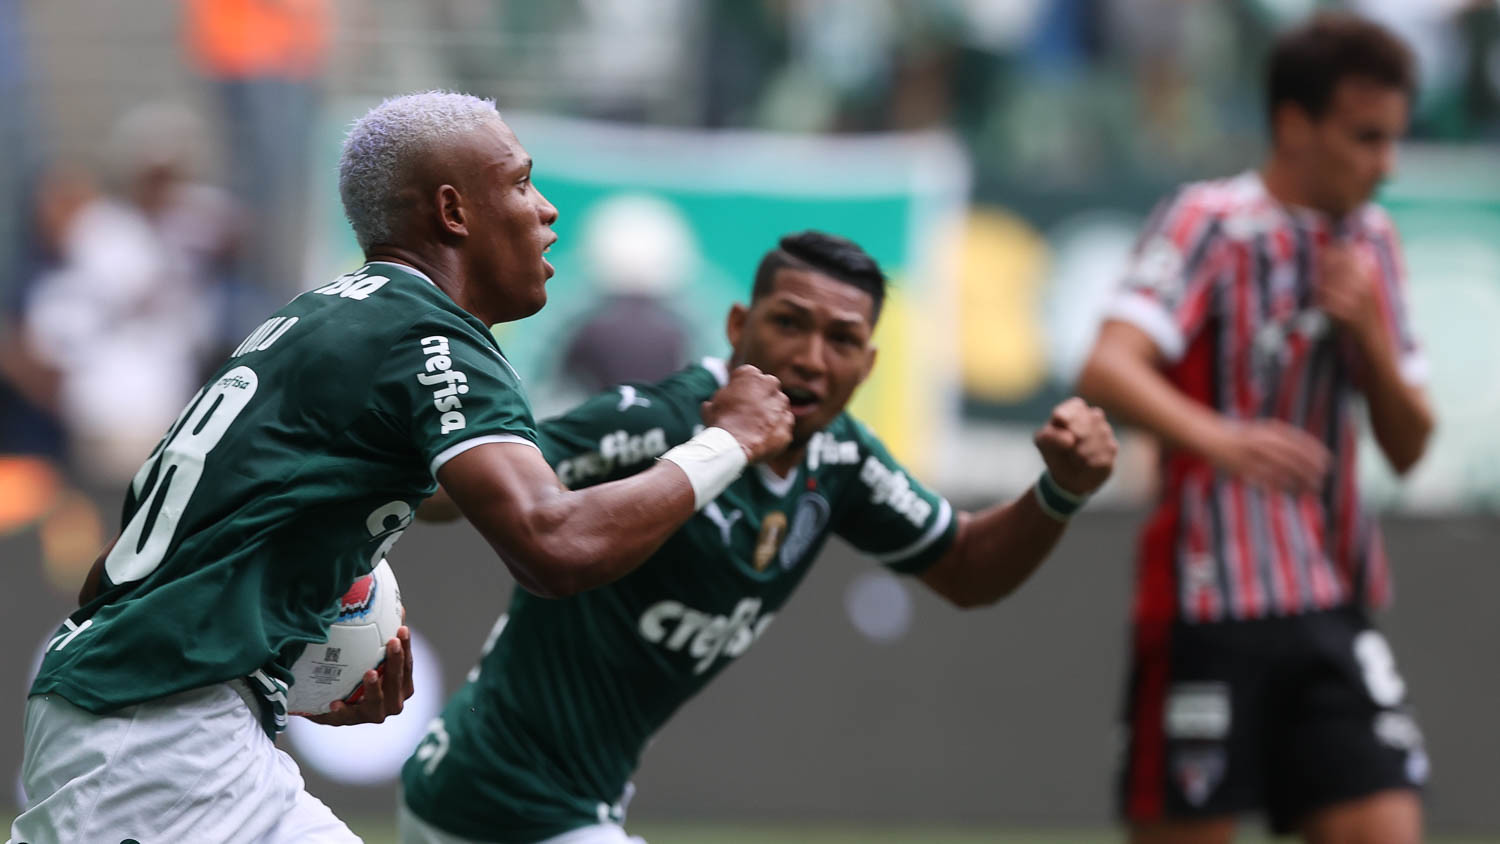 São Paulo 3 x 1 Palmeiras - Gols - 30/03 - Campeonato Paulista 2022 